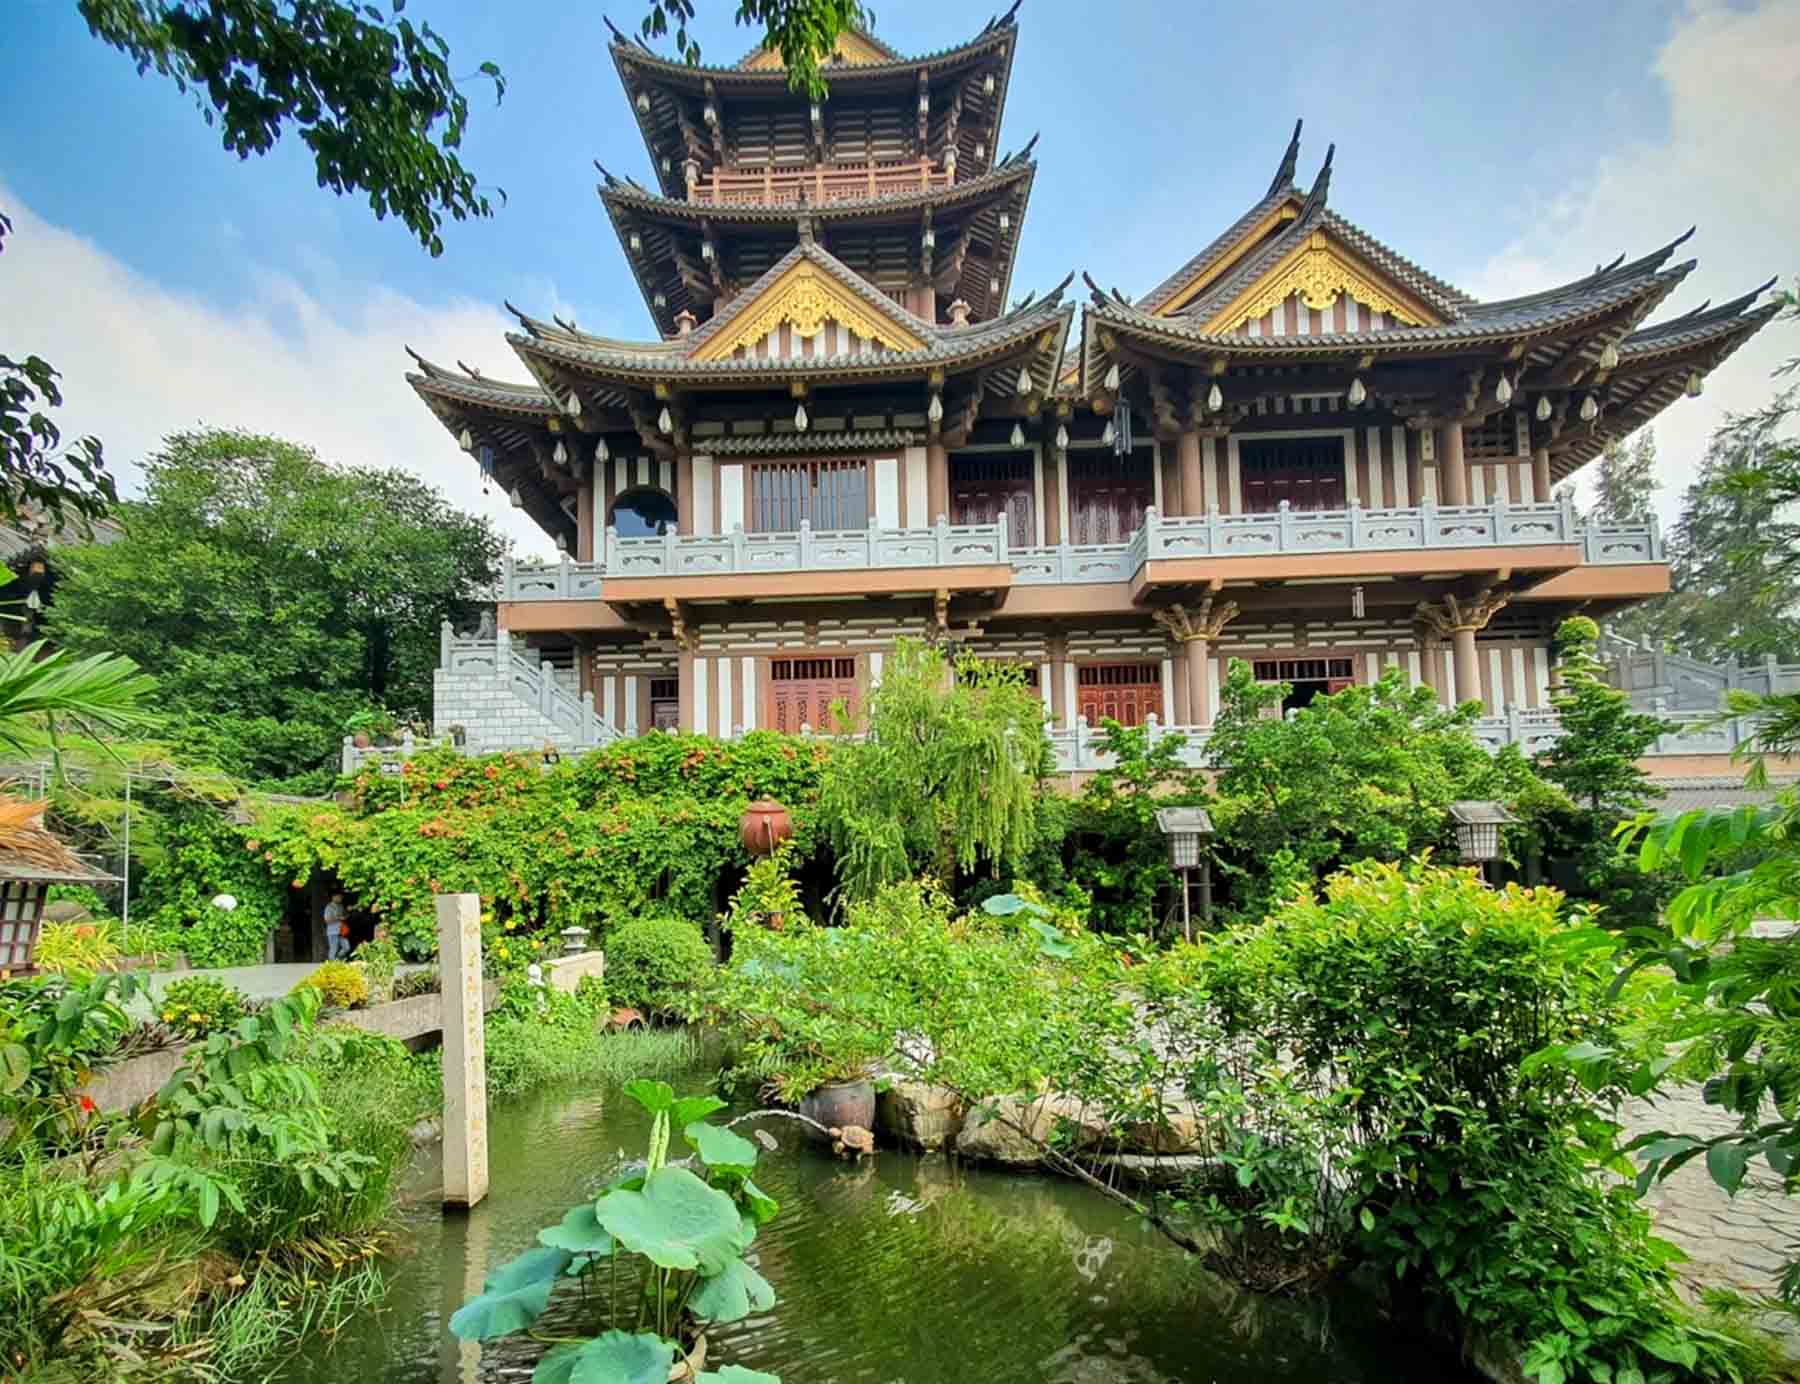 Top 7 địa điểm du lịch Sài Gòn hấp dẫn nhất dành cho dân sống ảo!